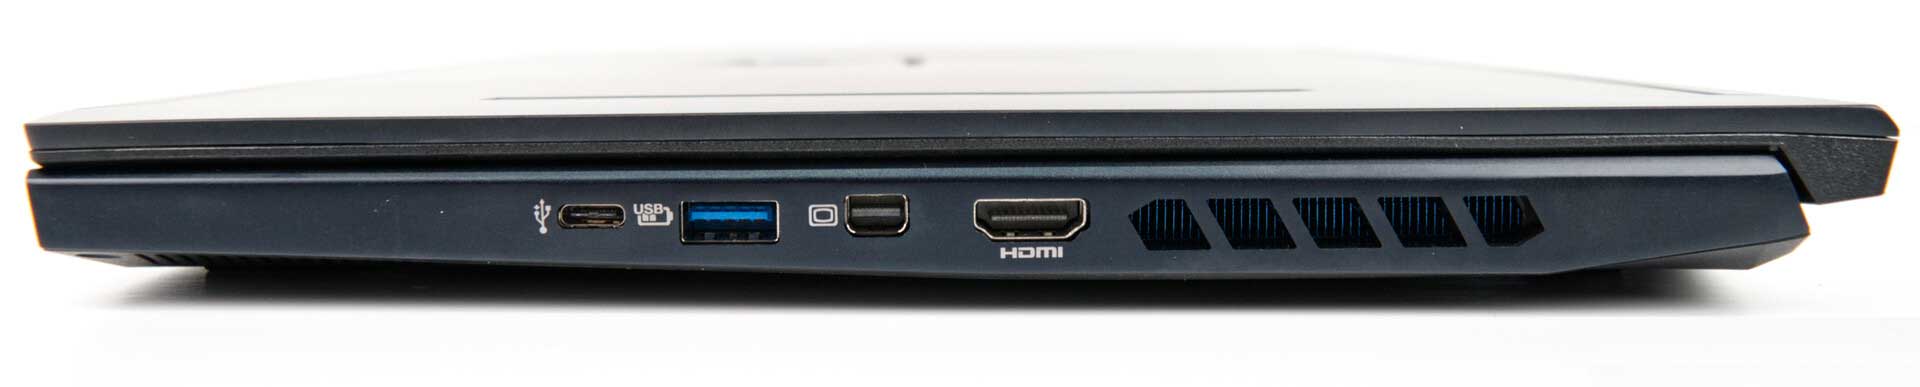 لپ تاپ ایسر Acer Predator Helios PH315-52-700L